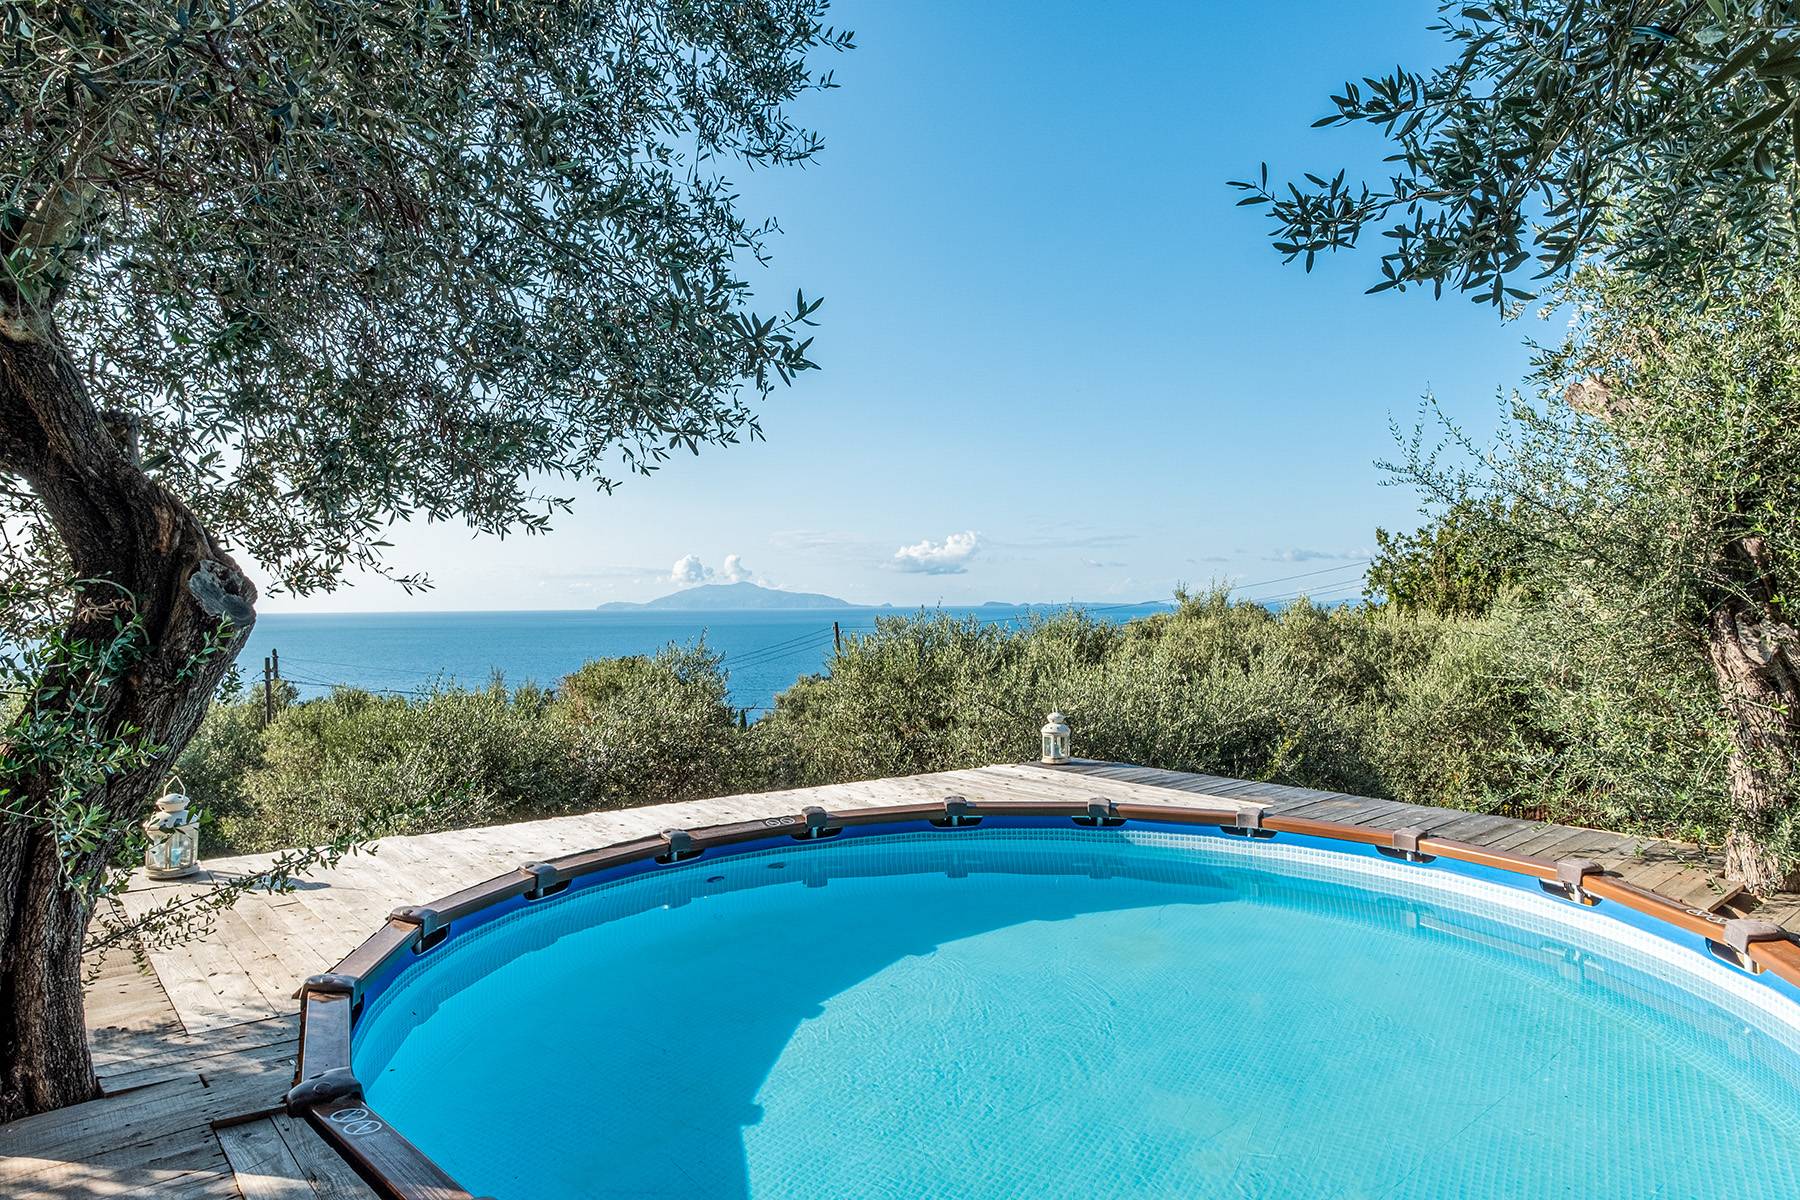 Villa in Vendita a Capri: 5 locali, 200 mq - Foto 6